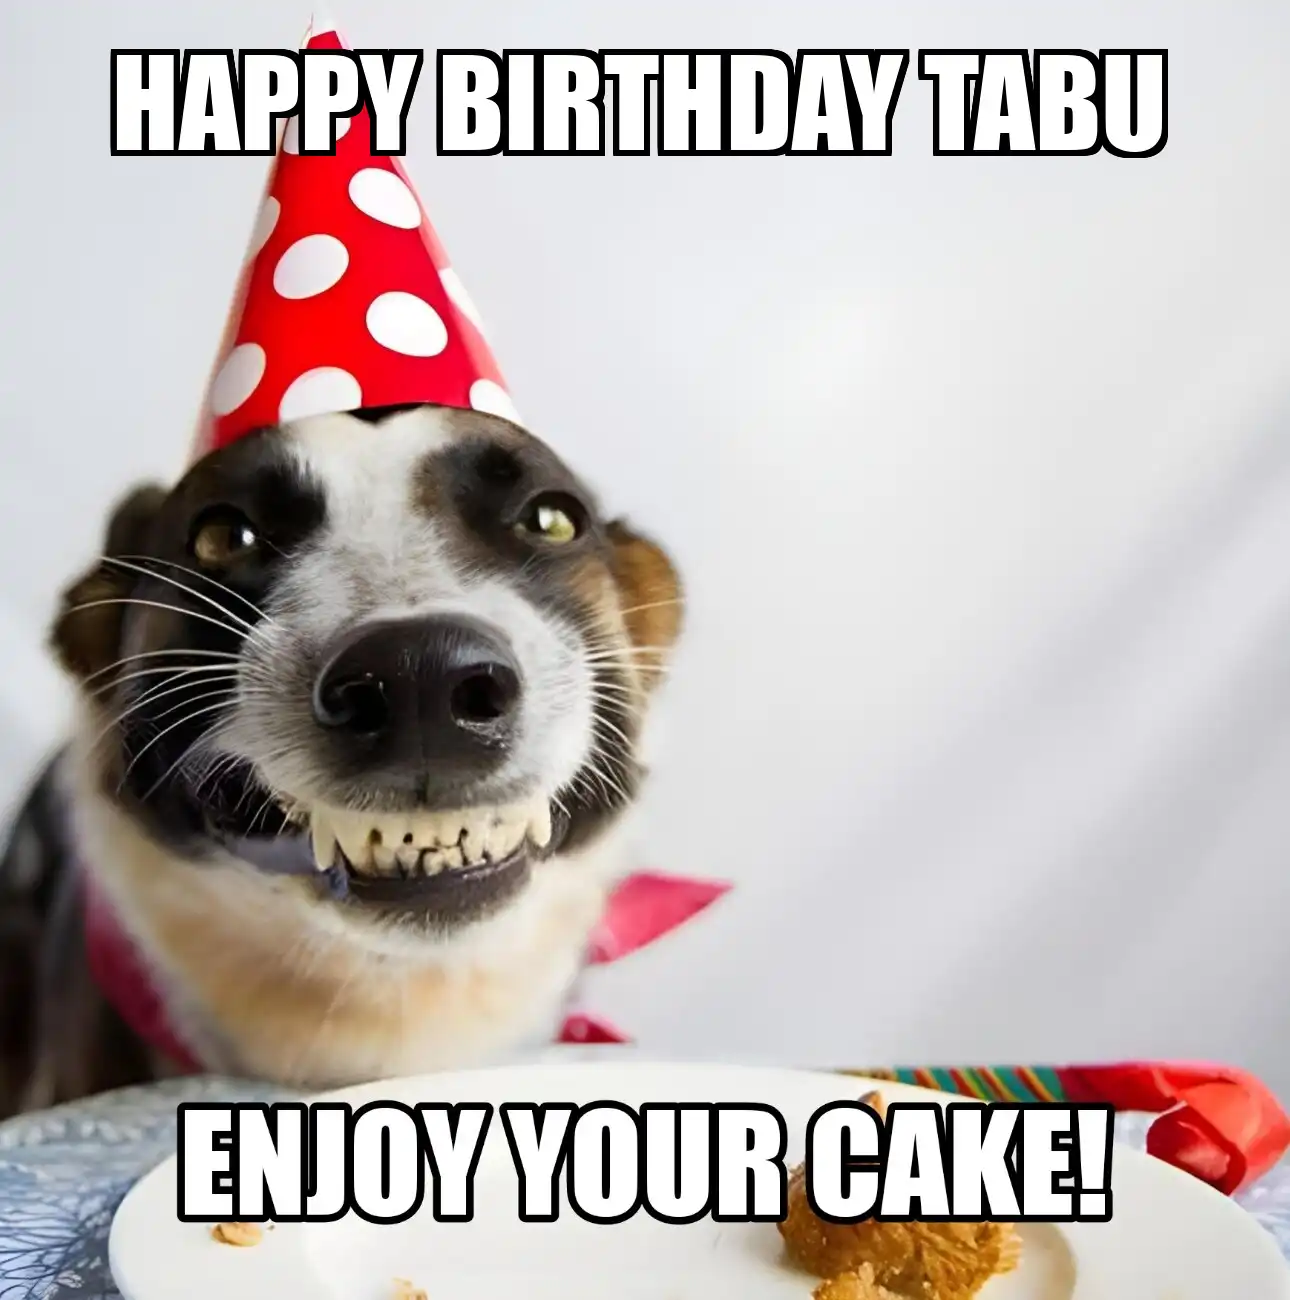 Happy Birthday Tabu Enjoy Your Cake Dog Meme